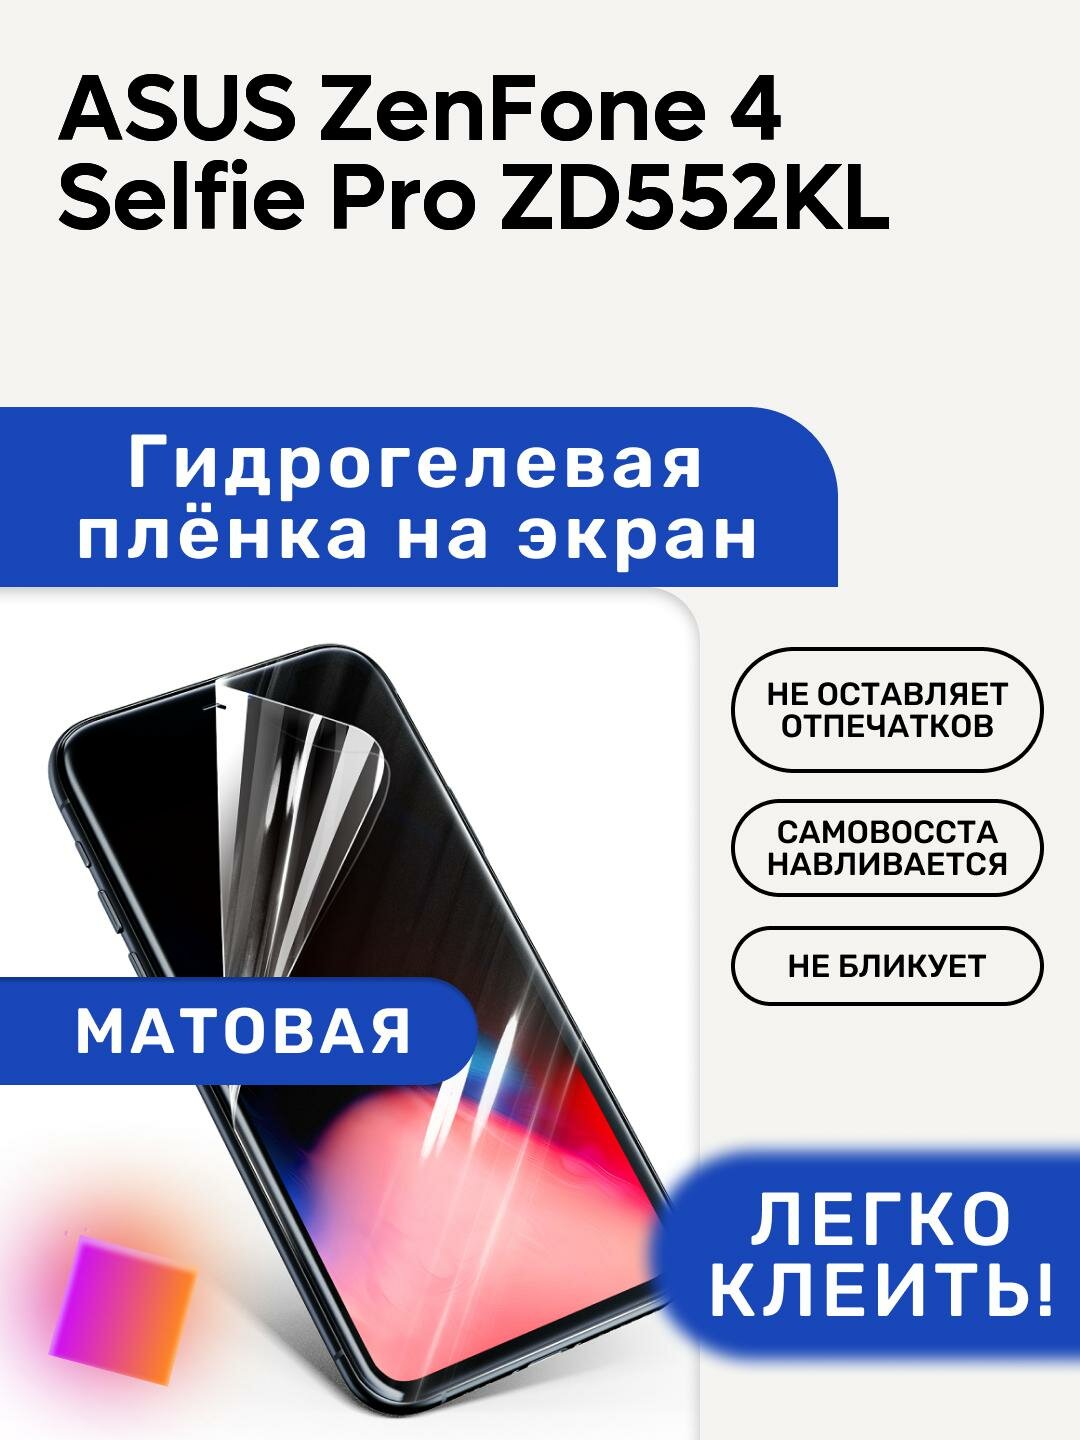 Матовая Гидрогелевая плёнка, полиуретановая, защита экрана ASUS ZenFone 4 Selfie Pro ZD552KL